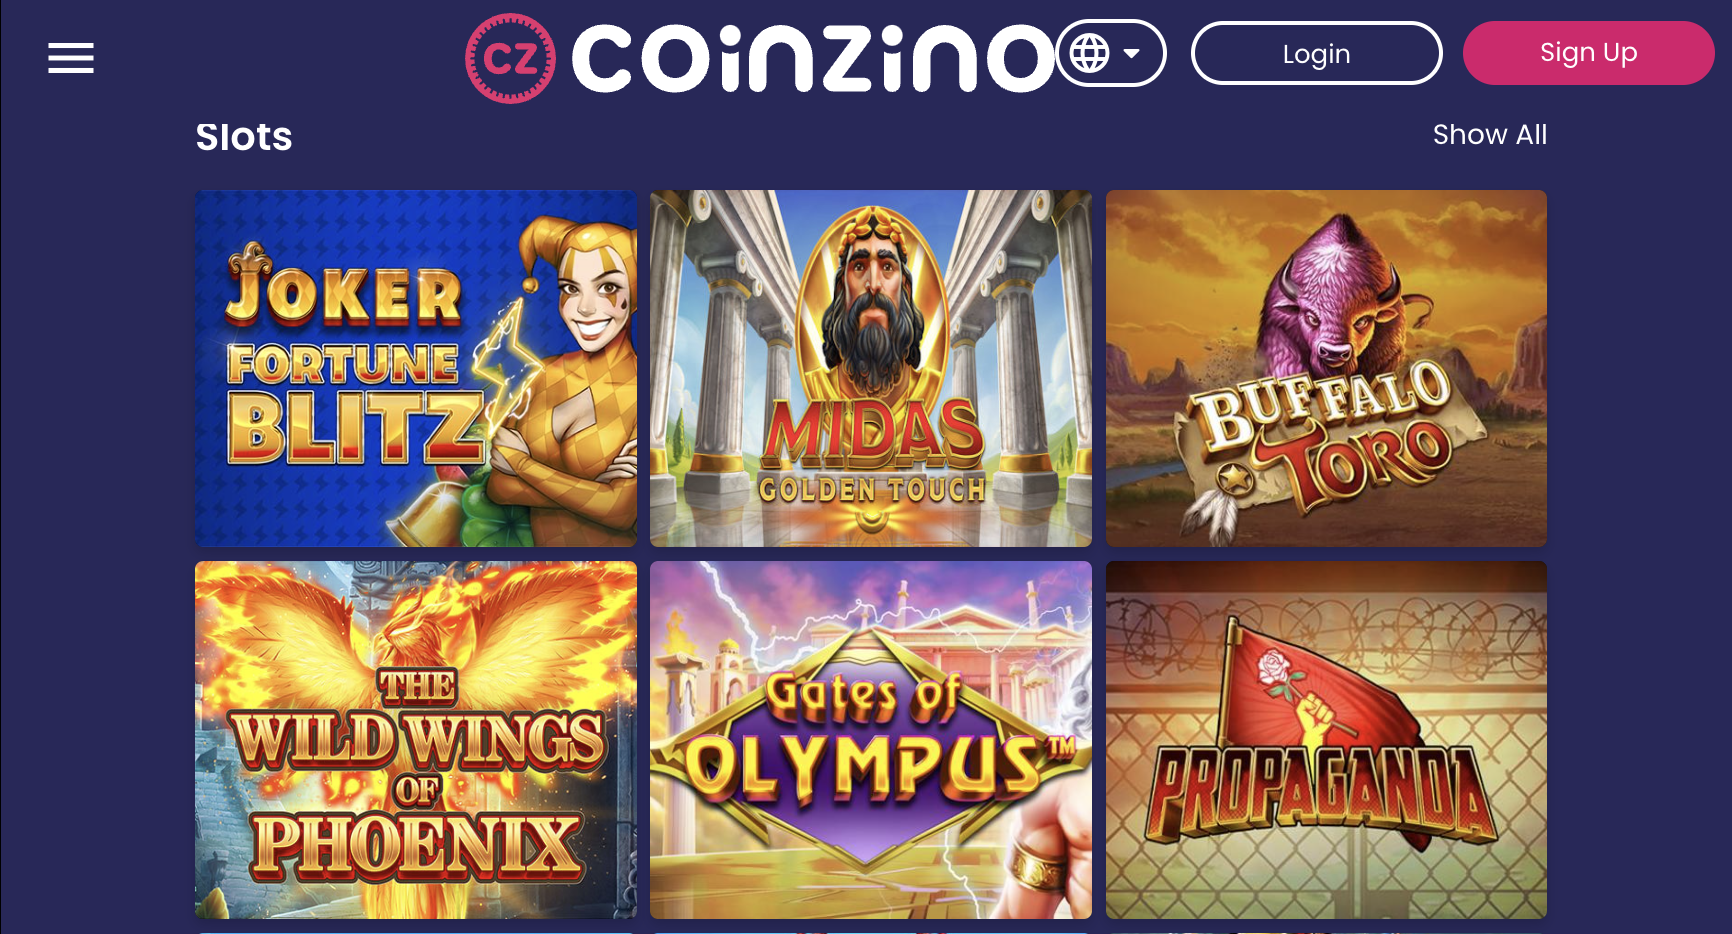 Coinzino Slots Available